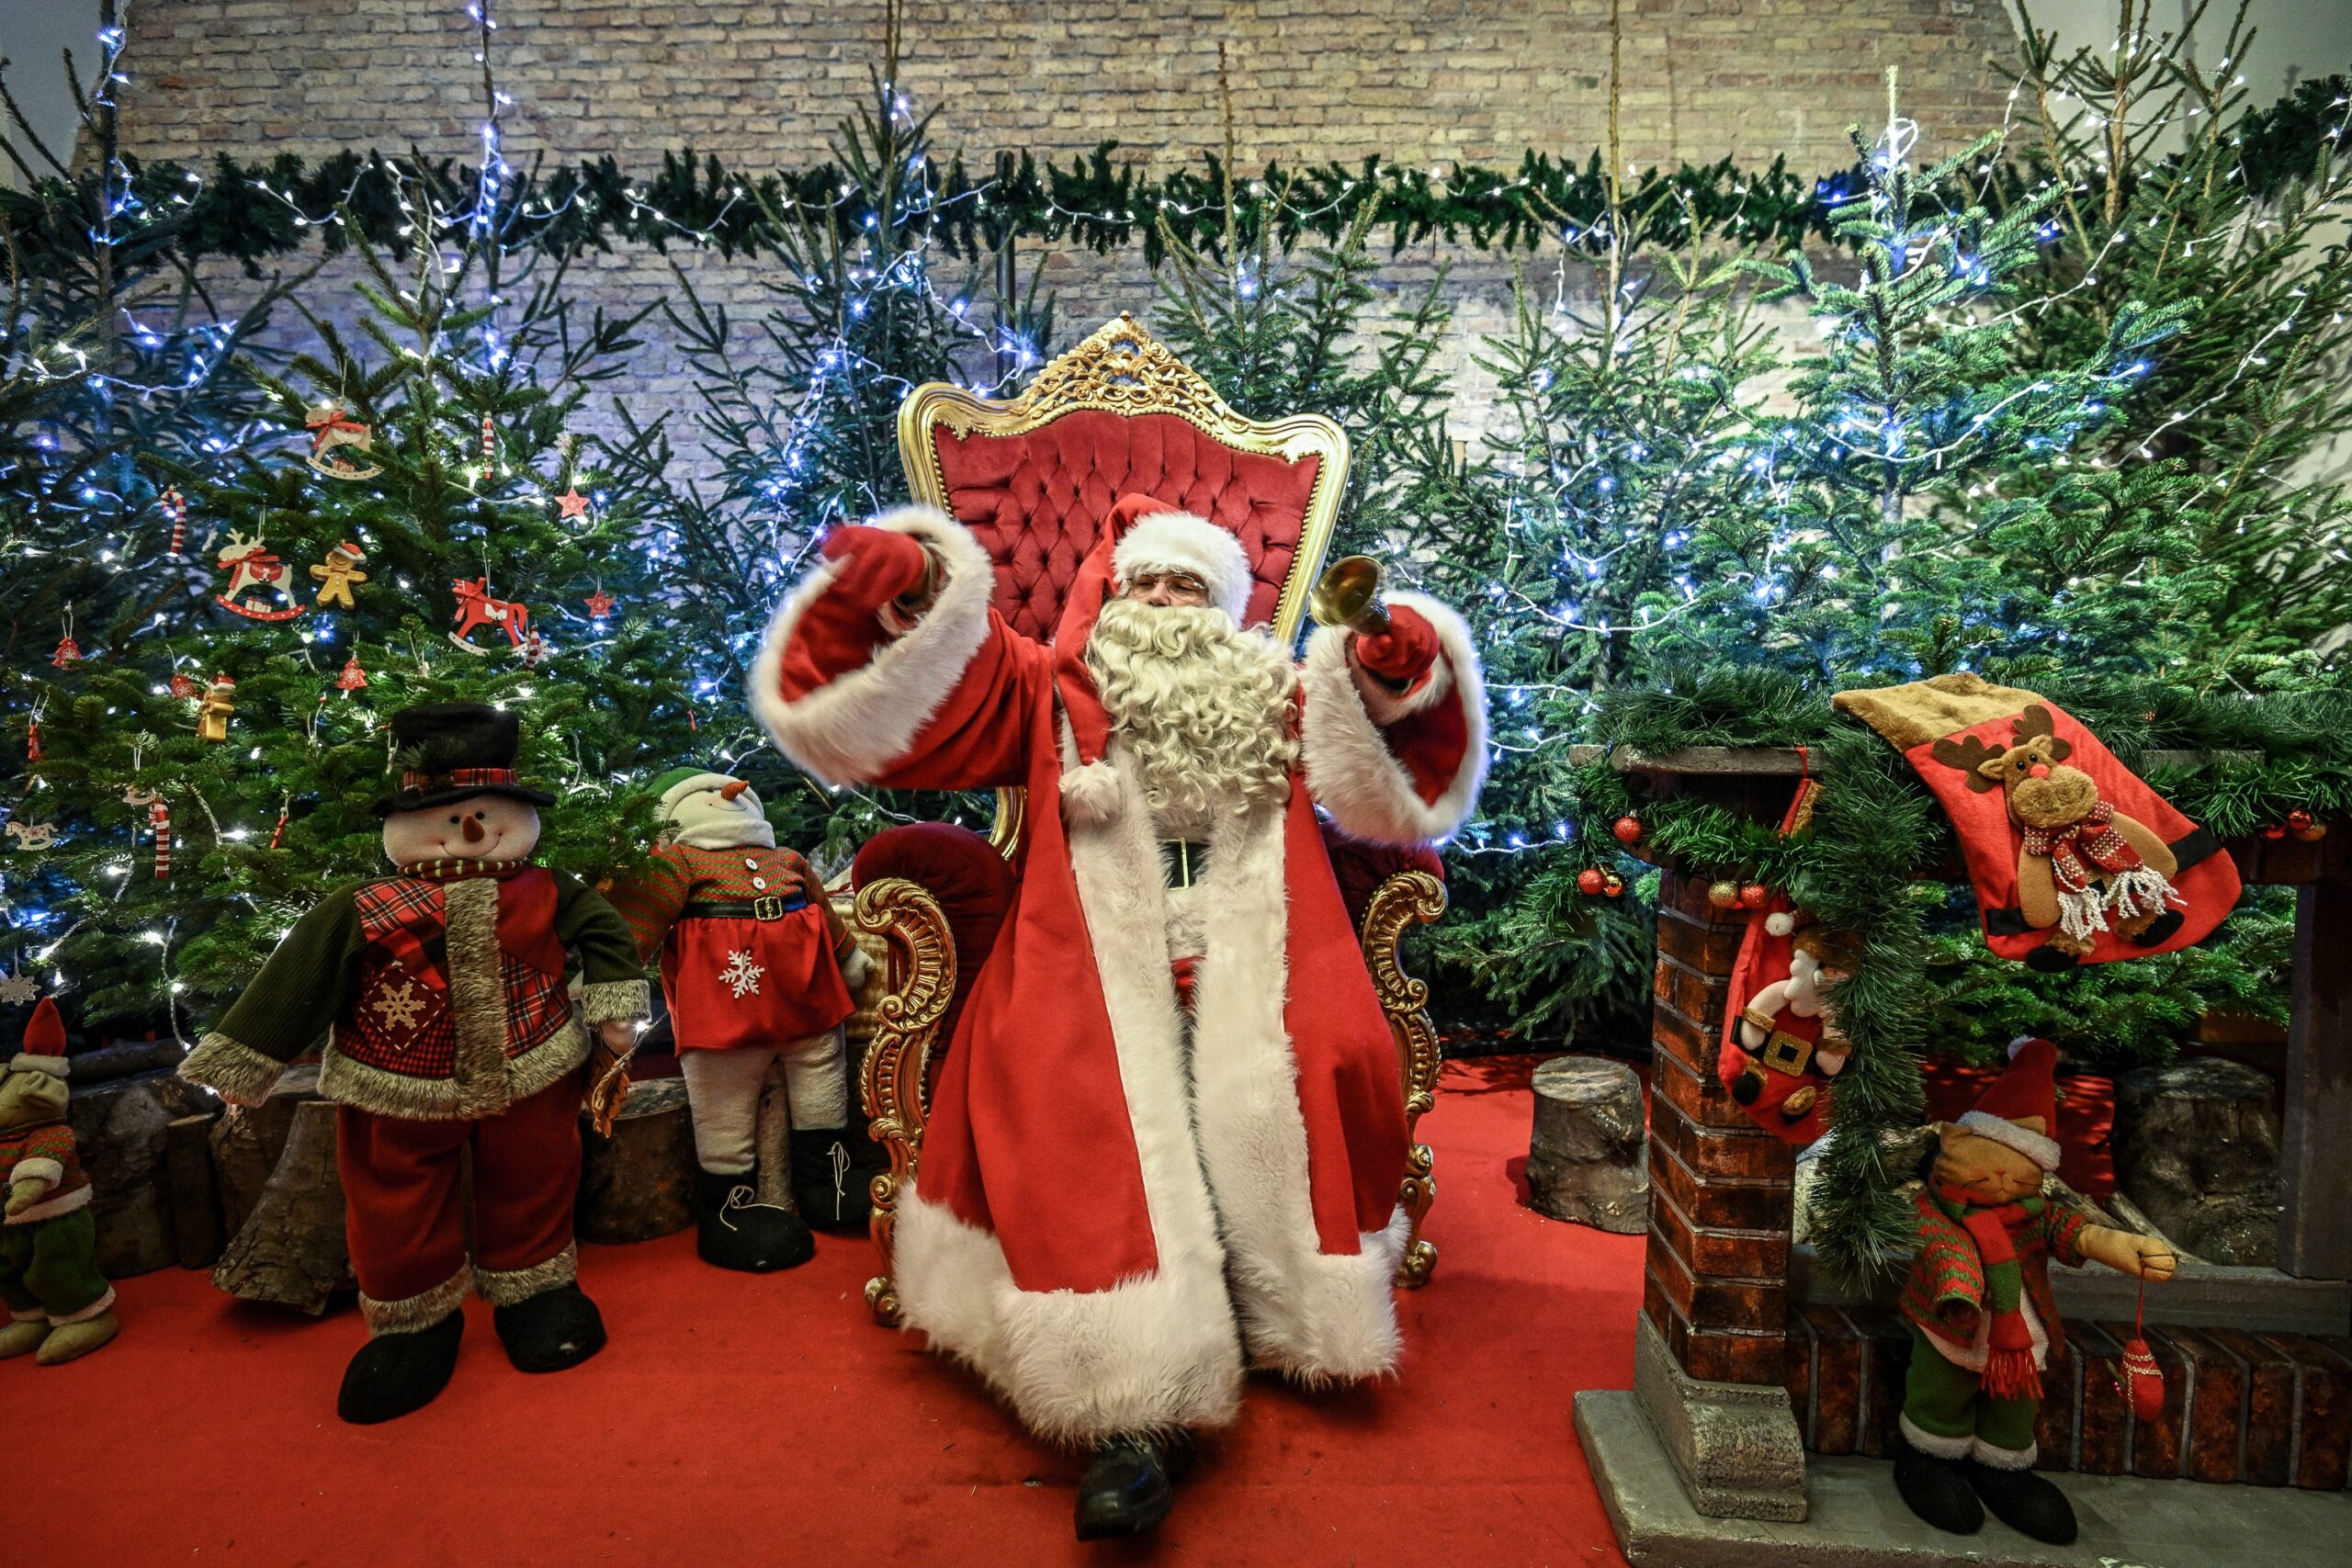 Święty Mikołaj, siedząc na ozdobnym tronie, daje dziecku prezent w postaci lizaka. W tle zdjęcia znajduje się choinka i świąteczne lampki, a na dalszym planie Gdańskie budynki.